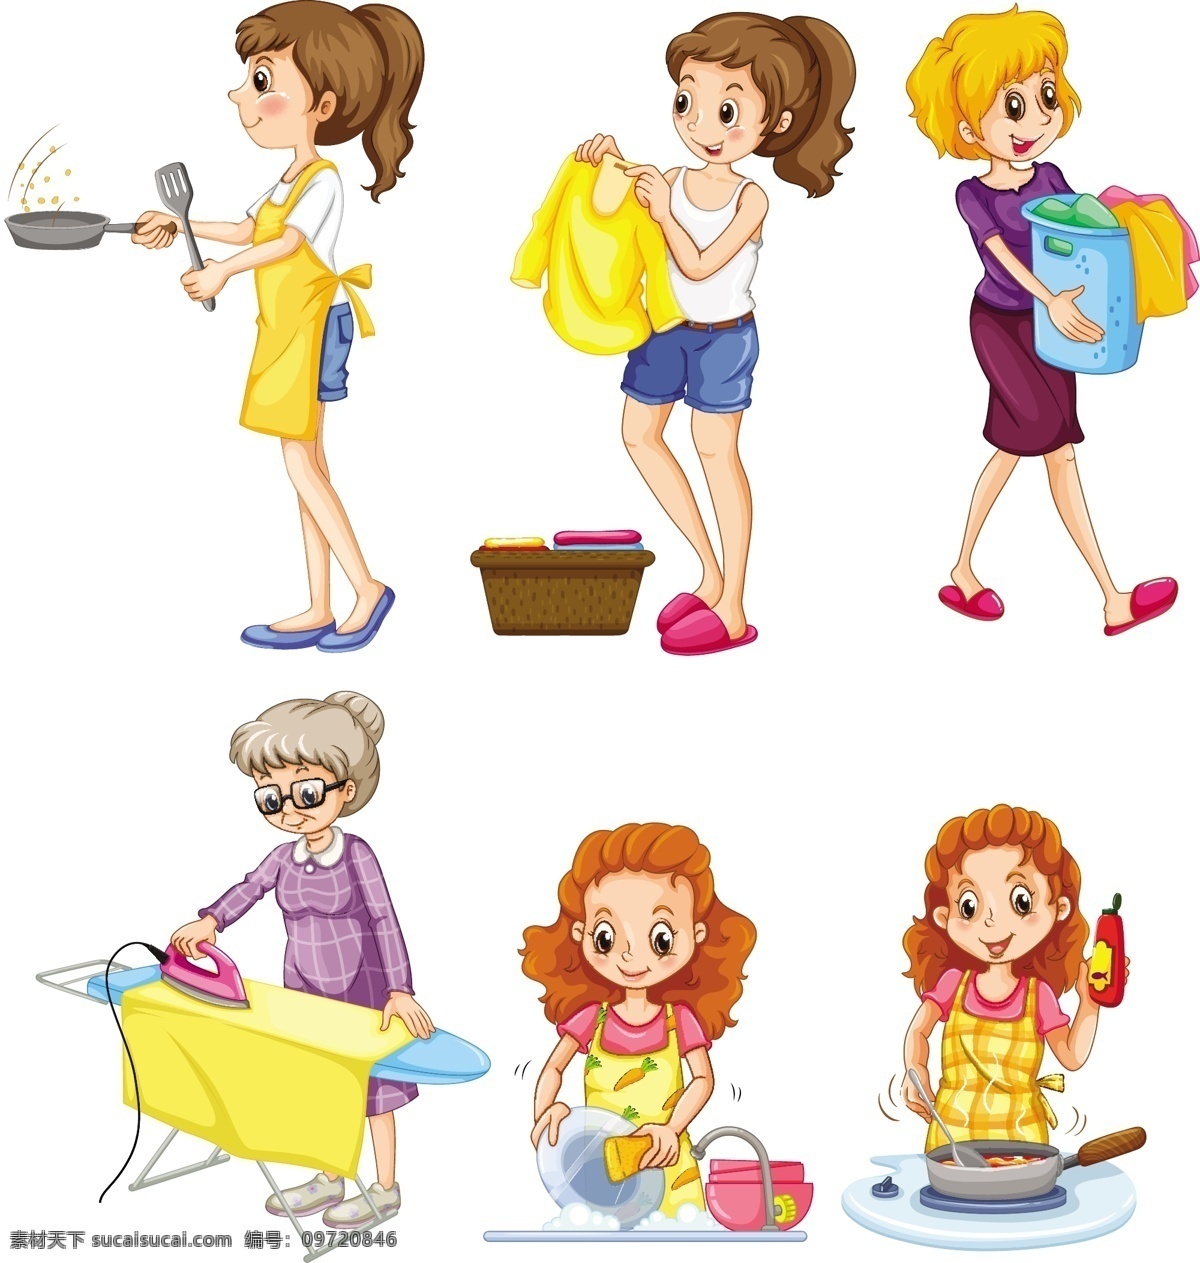 卡通家庭主妇 家庭主妇 女性 女人 人物 生活 清洁 妇女节 父母亲 节 卡通设计